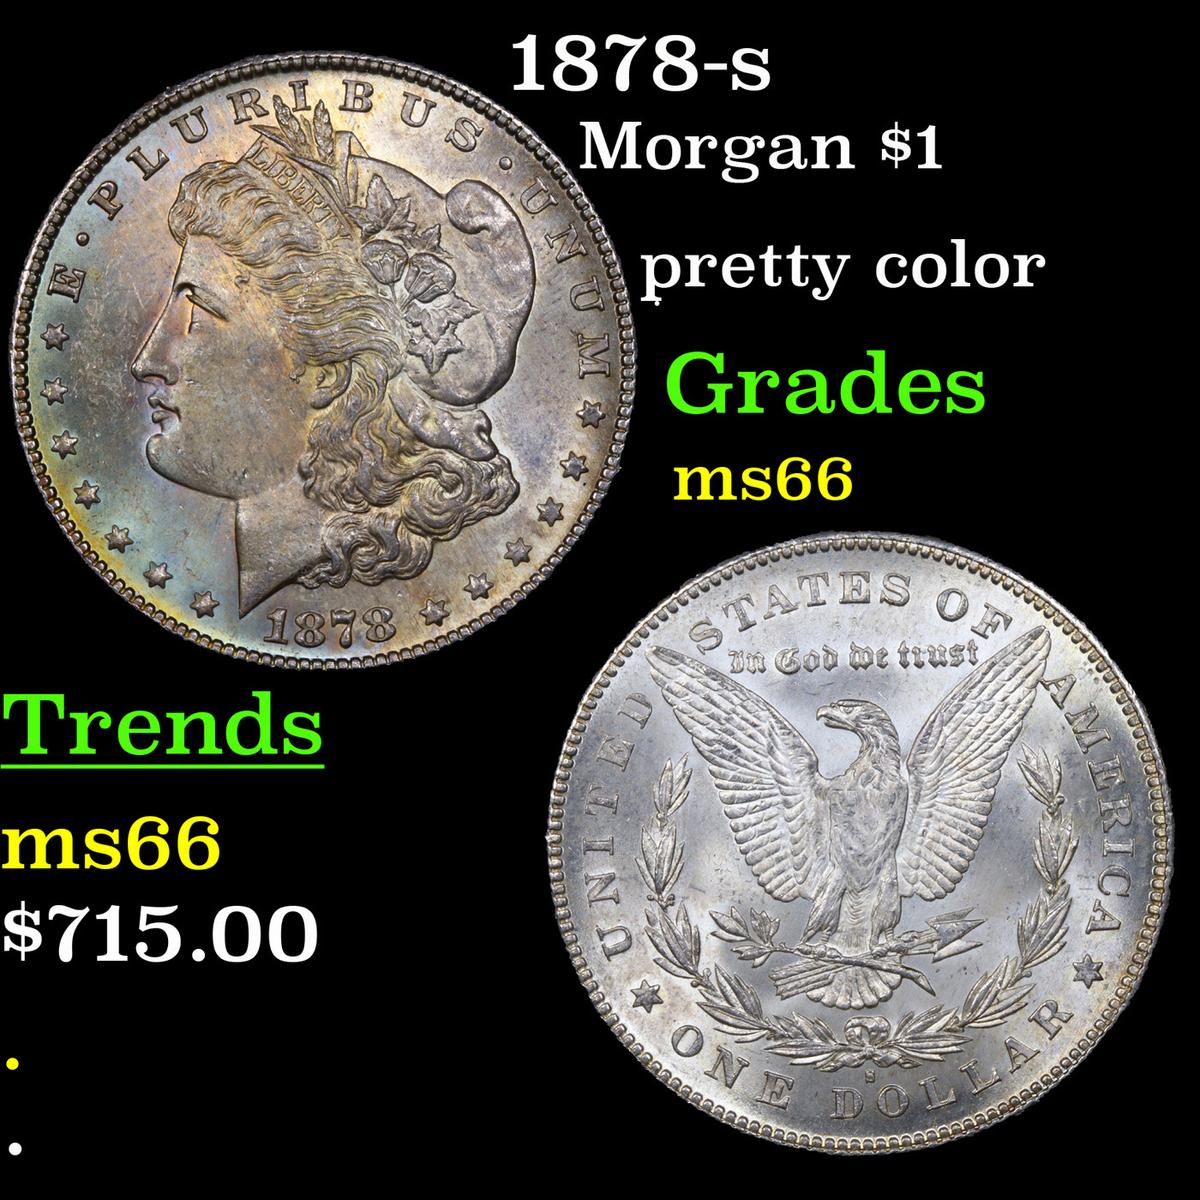 1878-s Morgan Dollar $1 Grades GEM+ Unc